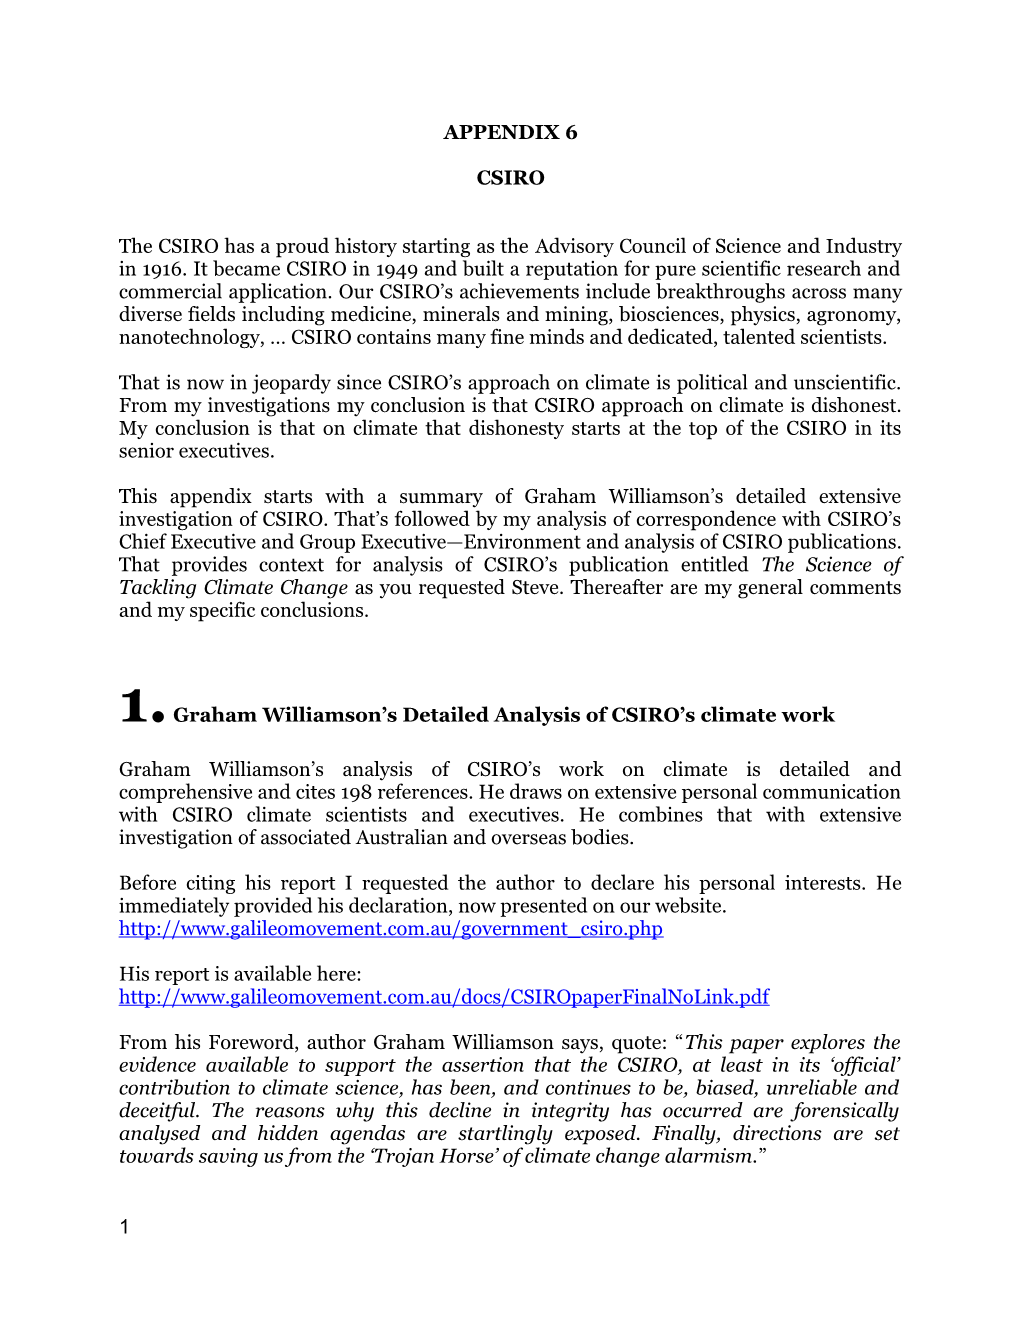 1.Graham Williamson S Detailed Analysis of CSIRO S Climate Work